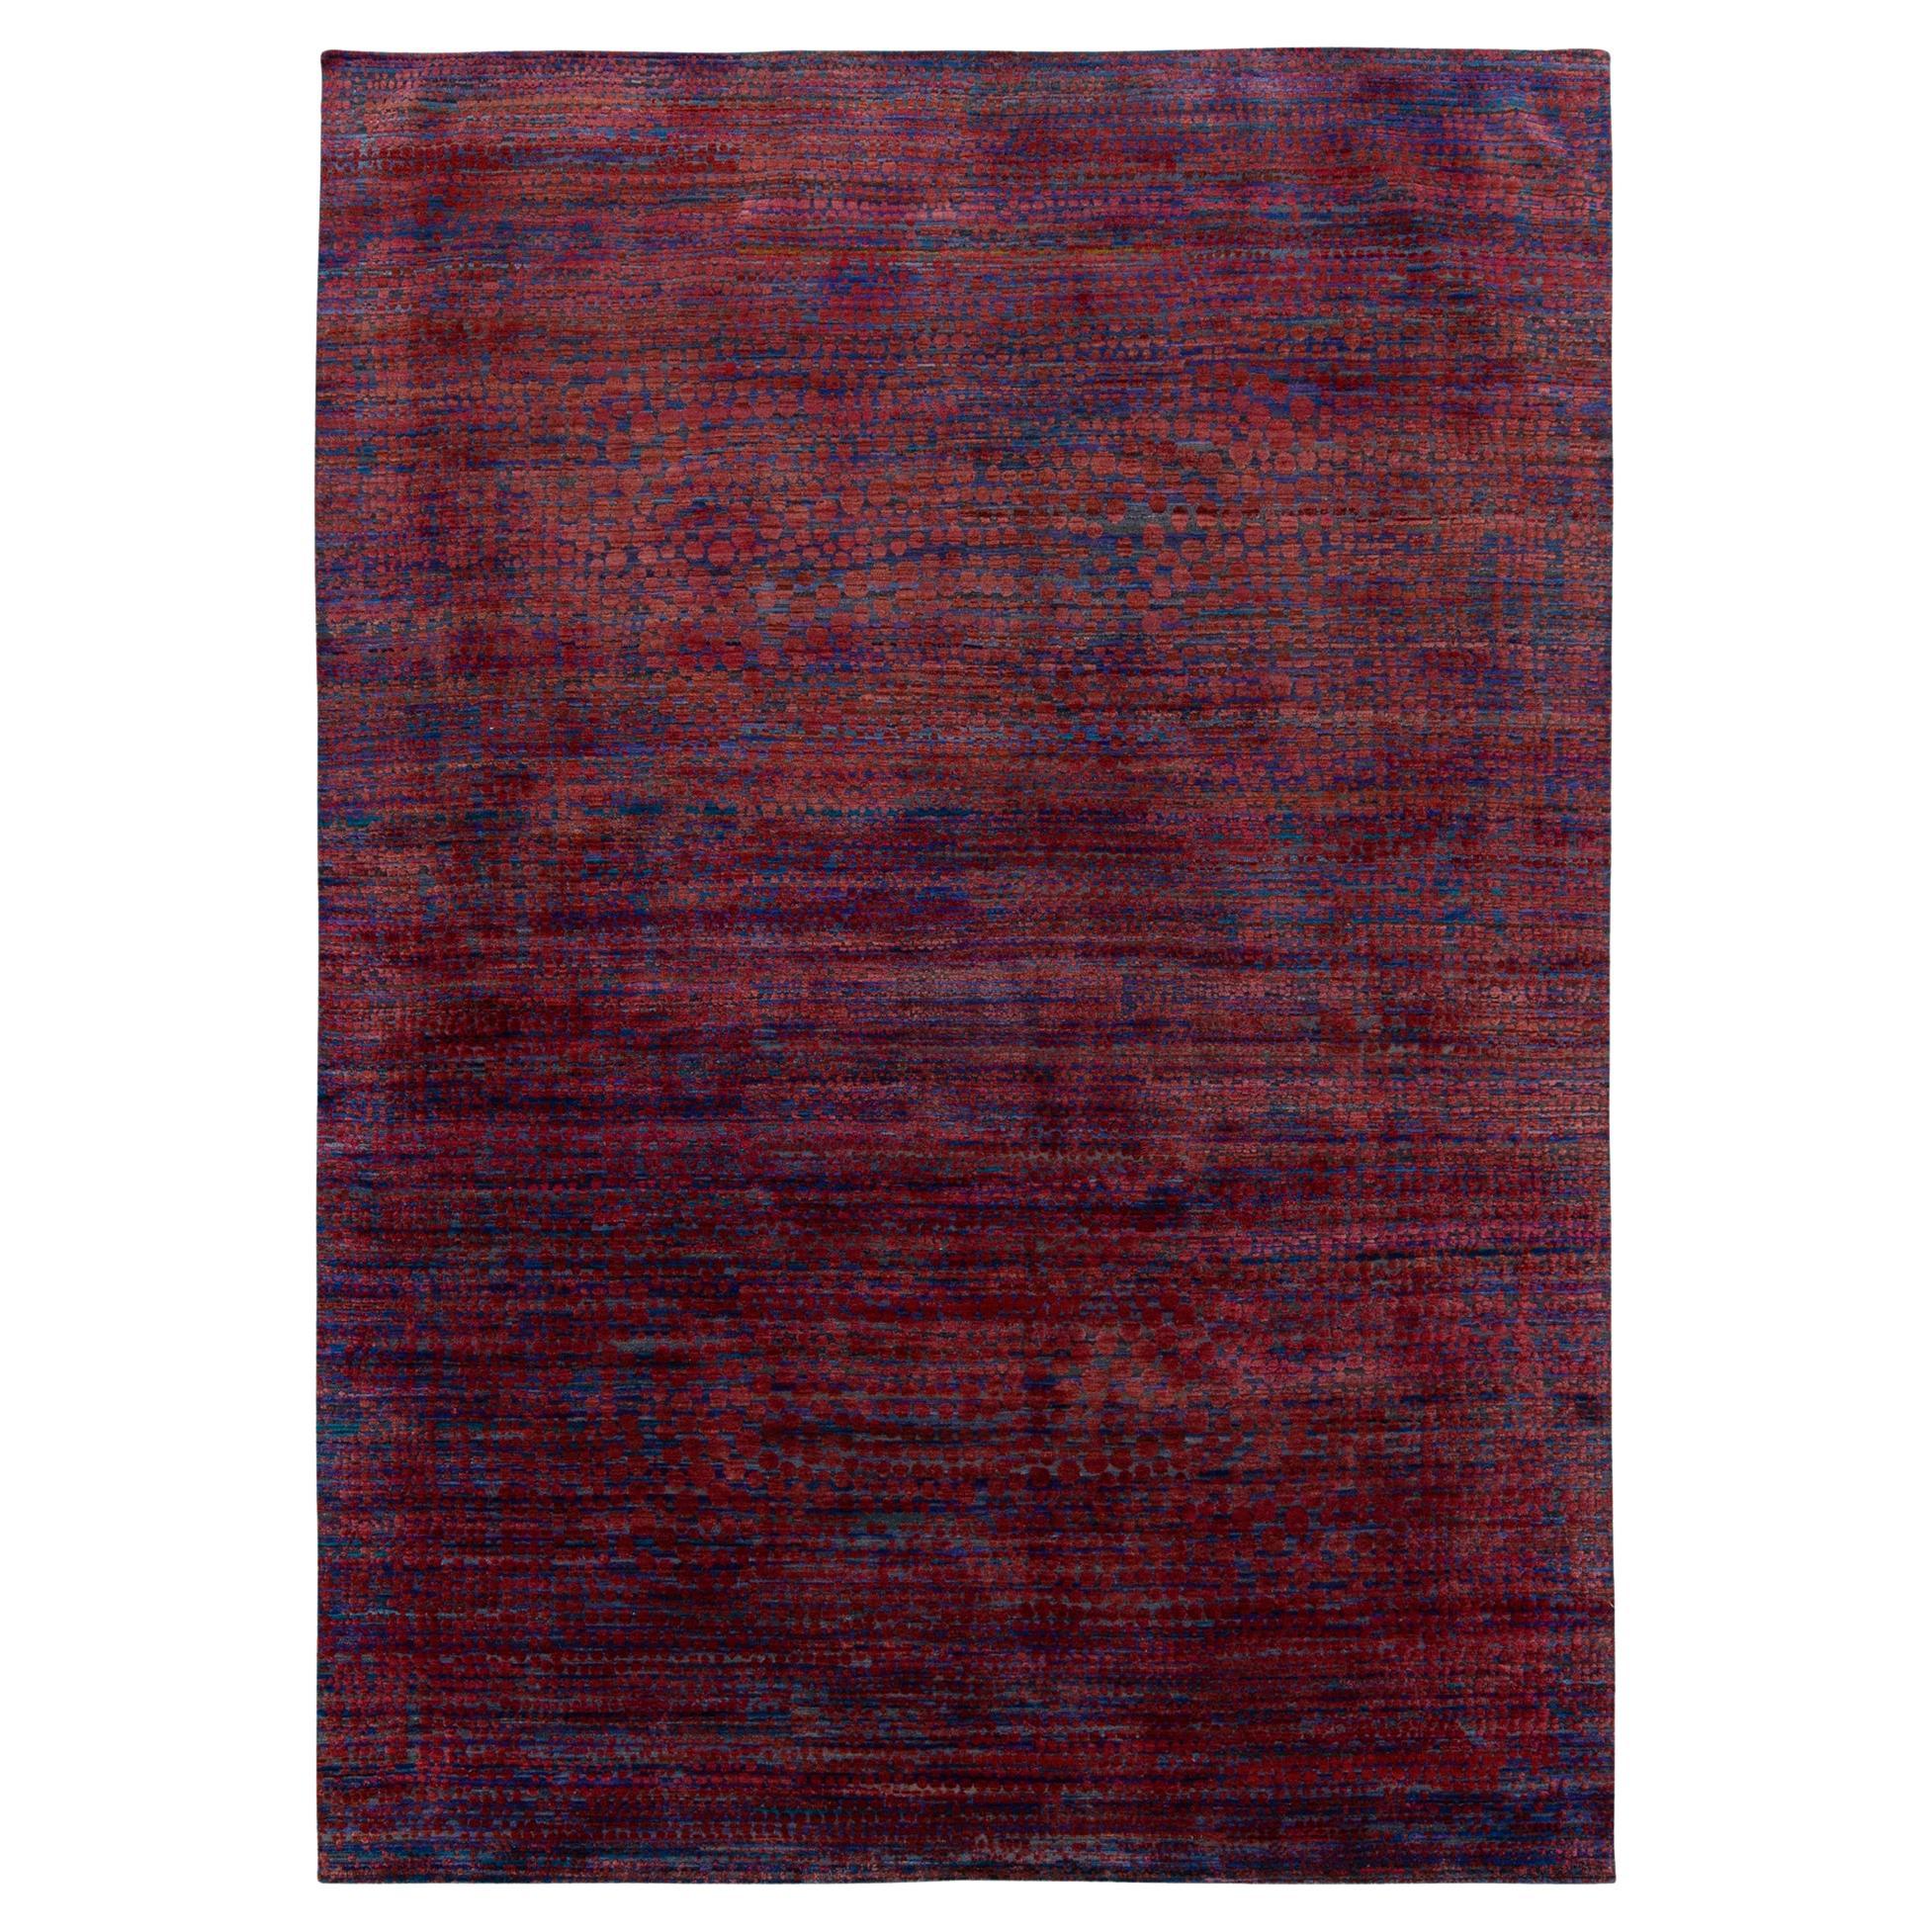 Moderner abstrakter Teppich von Teppich & Kilims mit rotem und blauem Punktmuster